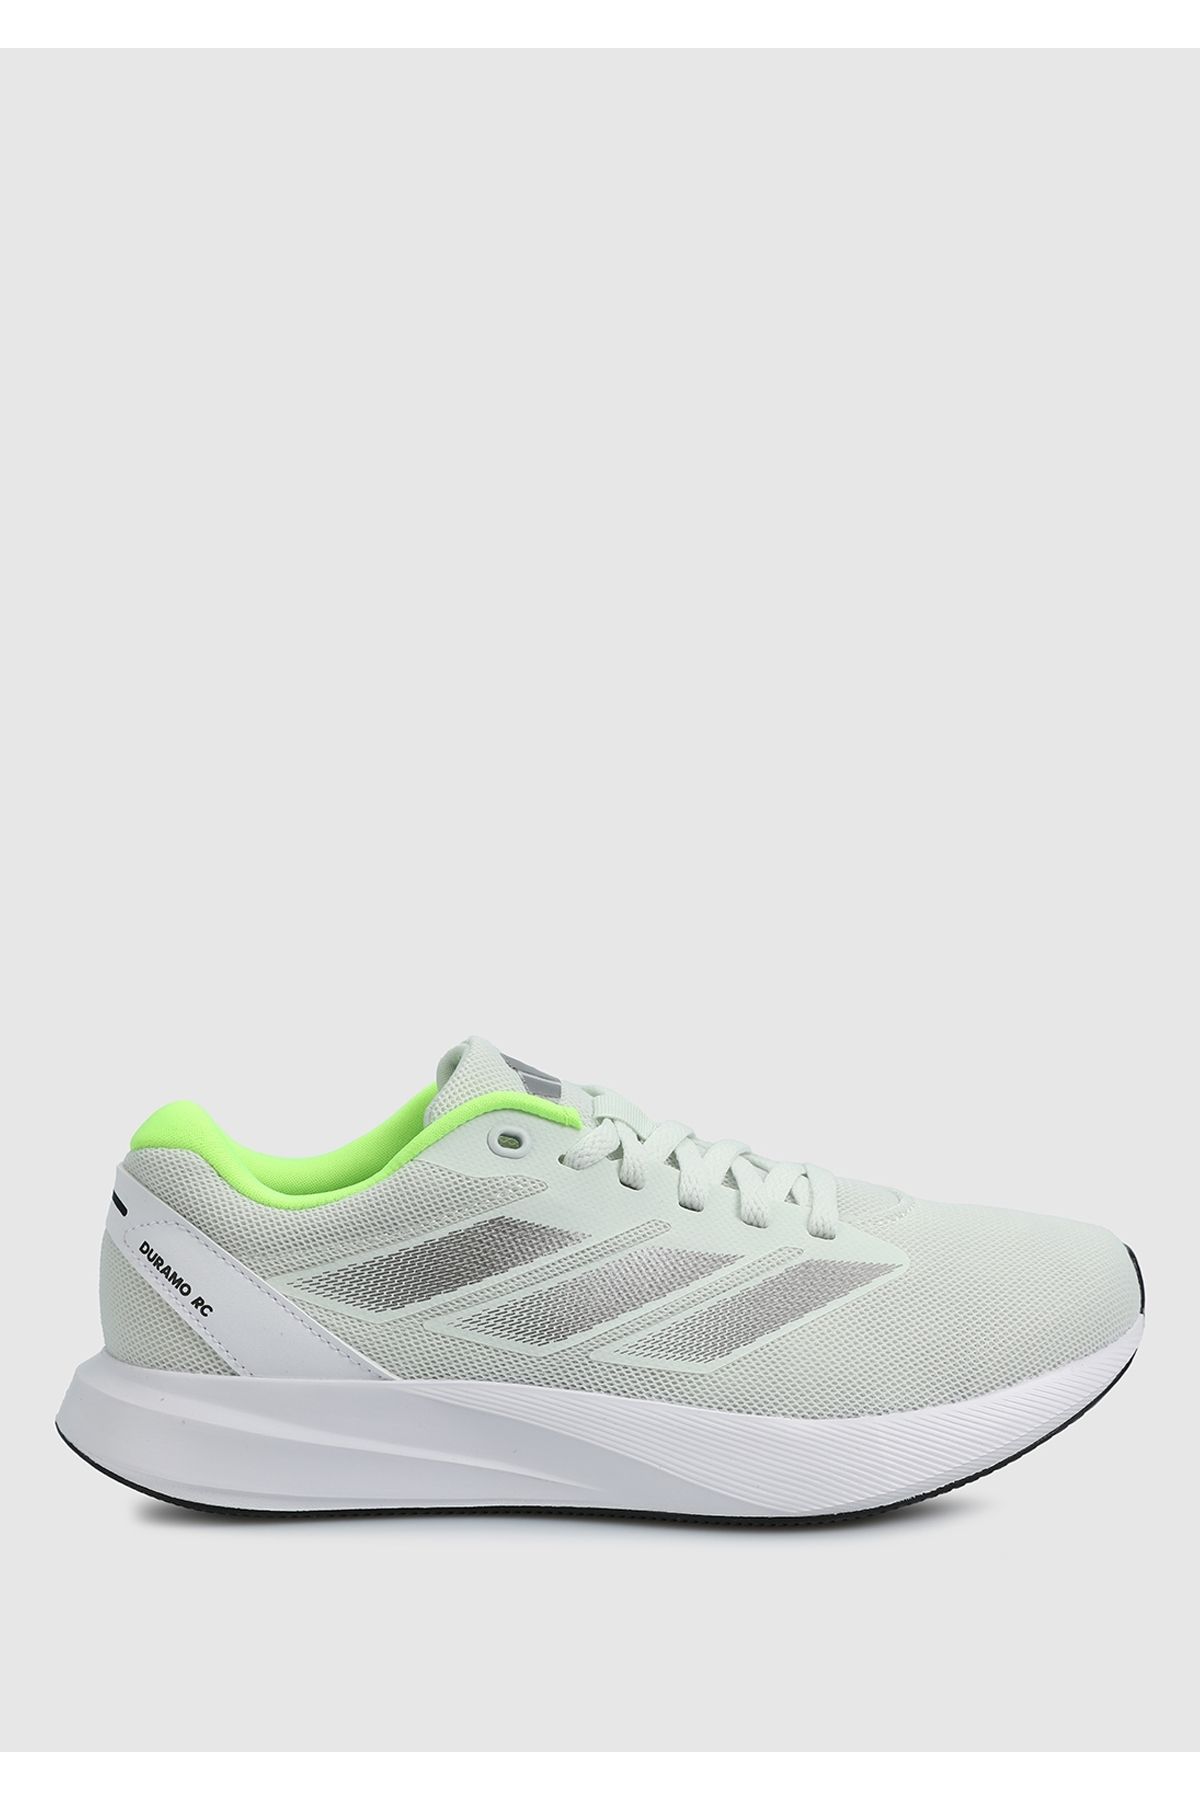 adidas Duramo Rc W Yeşil Kadın Koşu Ayakkabısı Ie7991